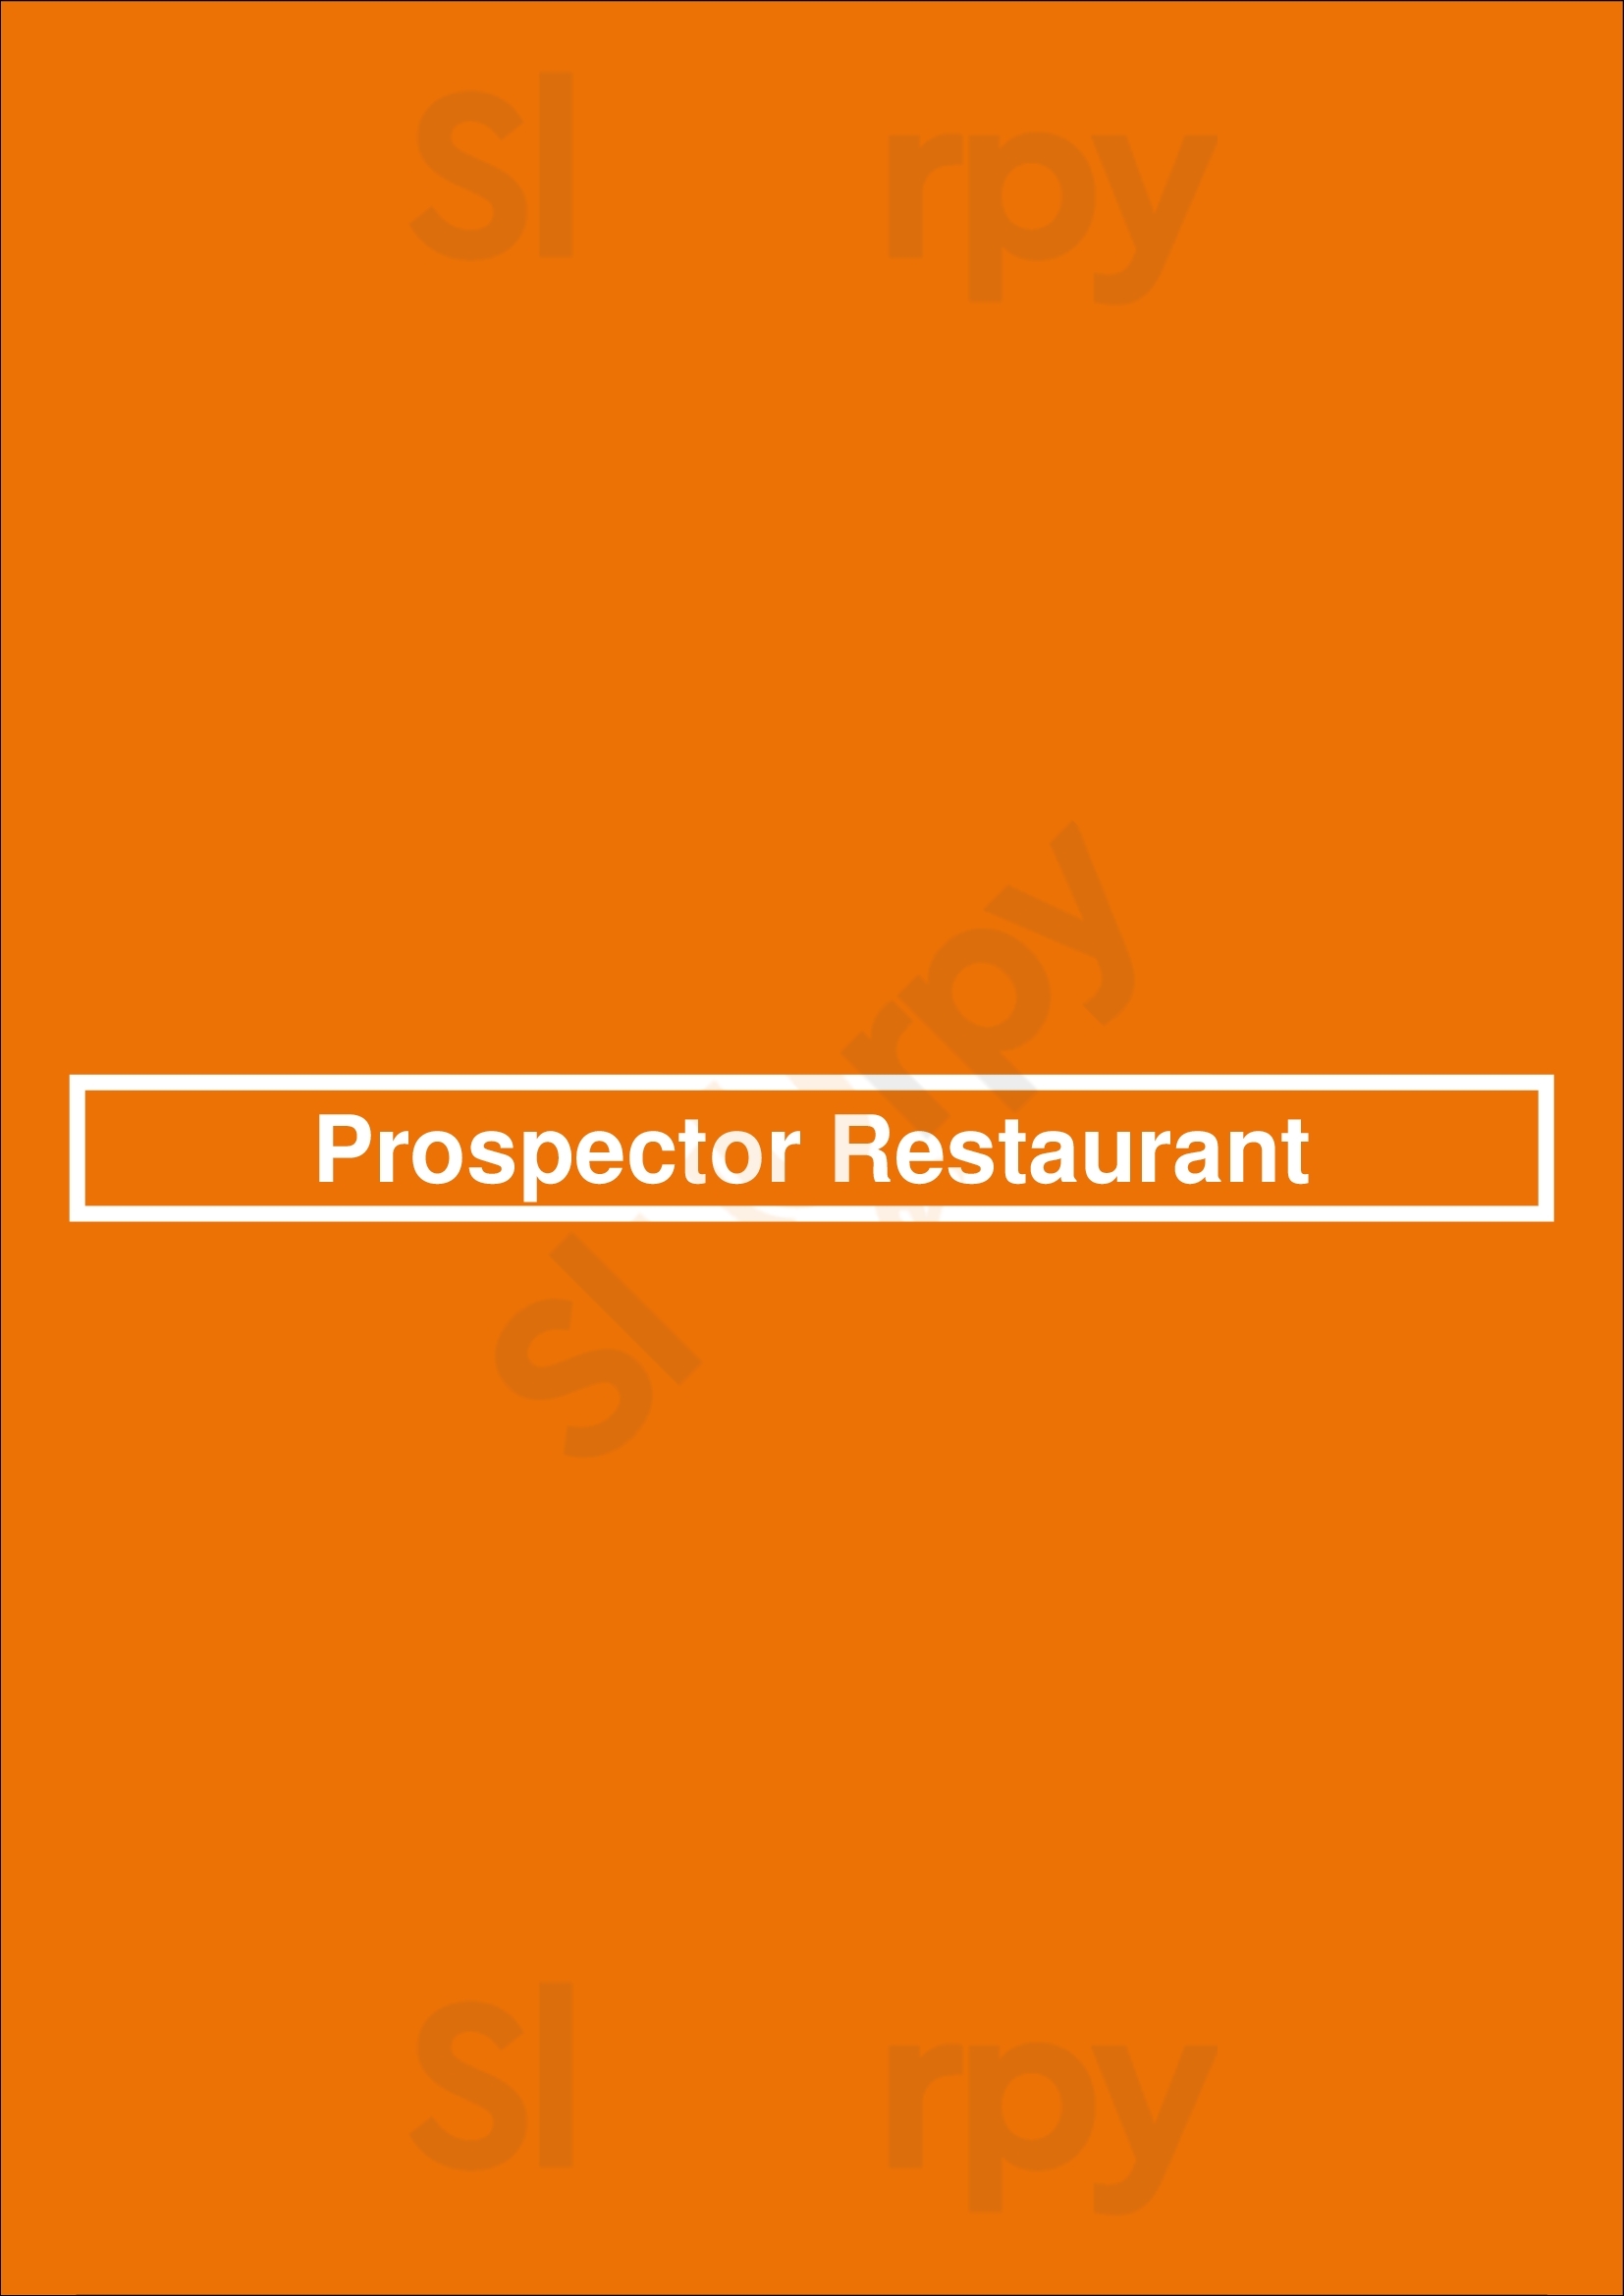 Prospector Restaurant Thunder Bay Menu - 1